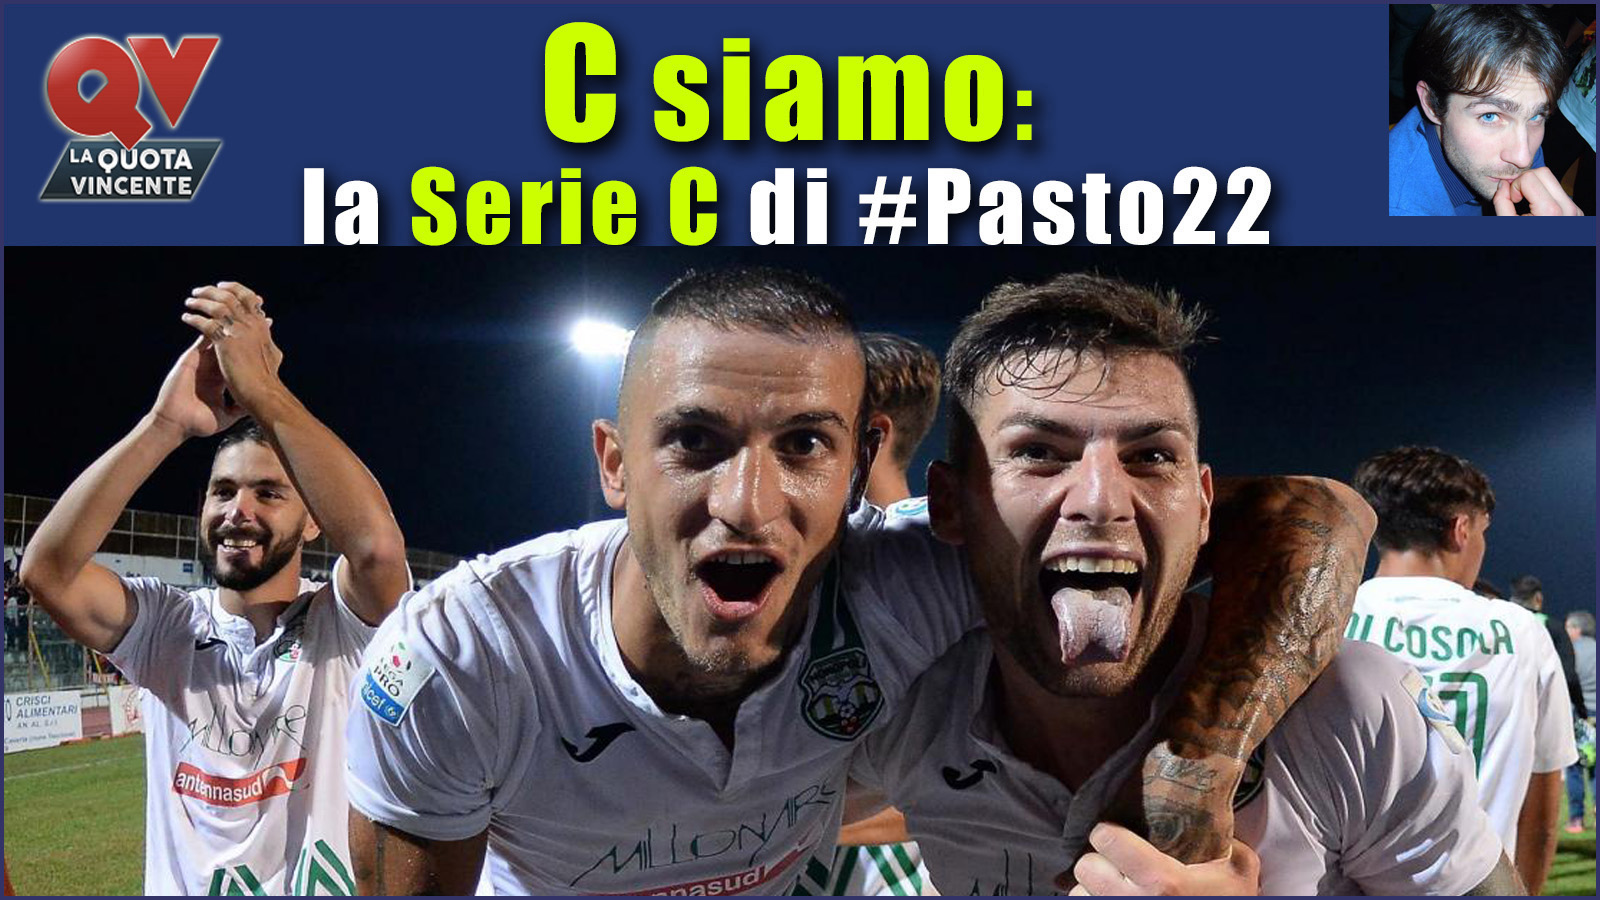 Pronostici Serie C sabato 21 ottobre: #Csiamo, il blog di #Pasto22